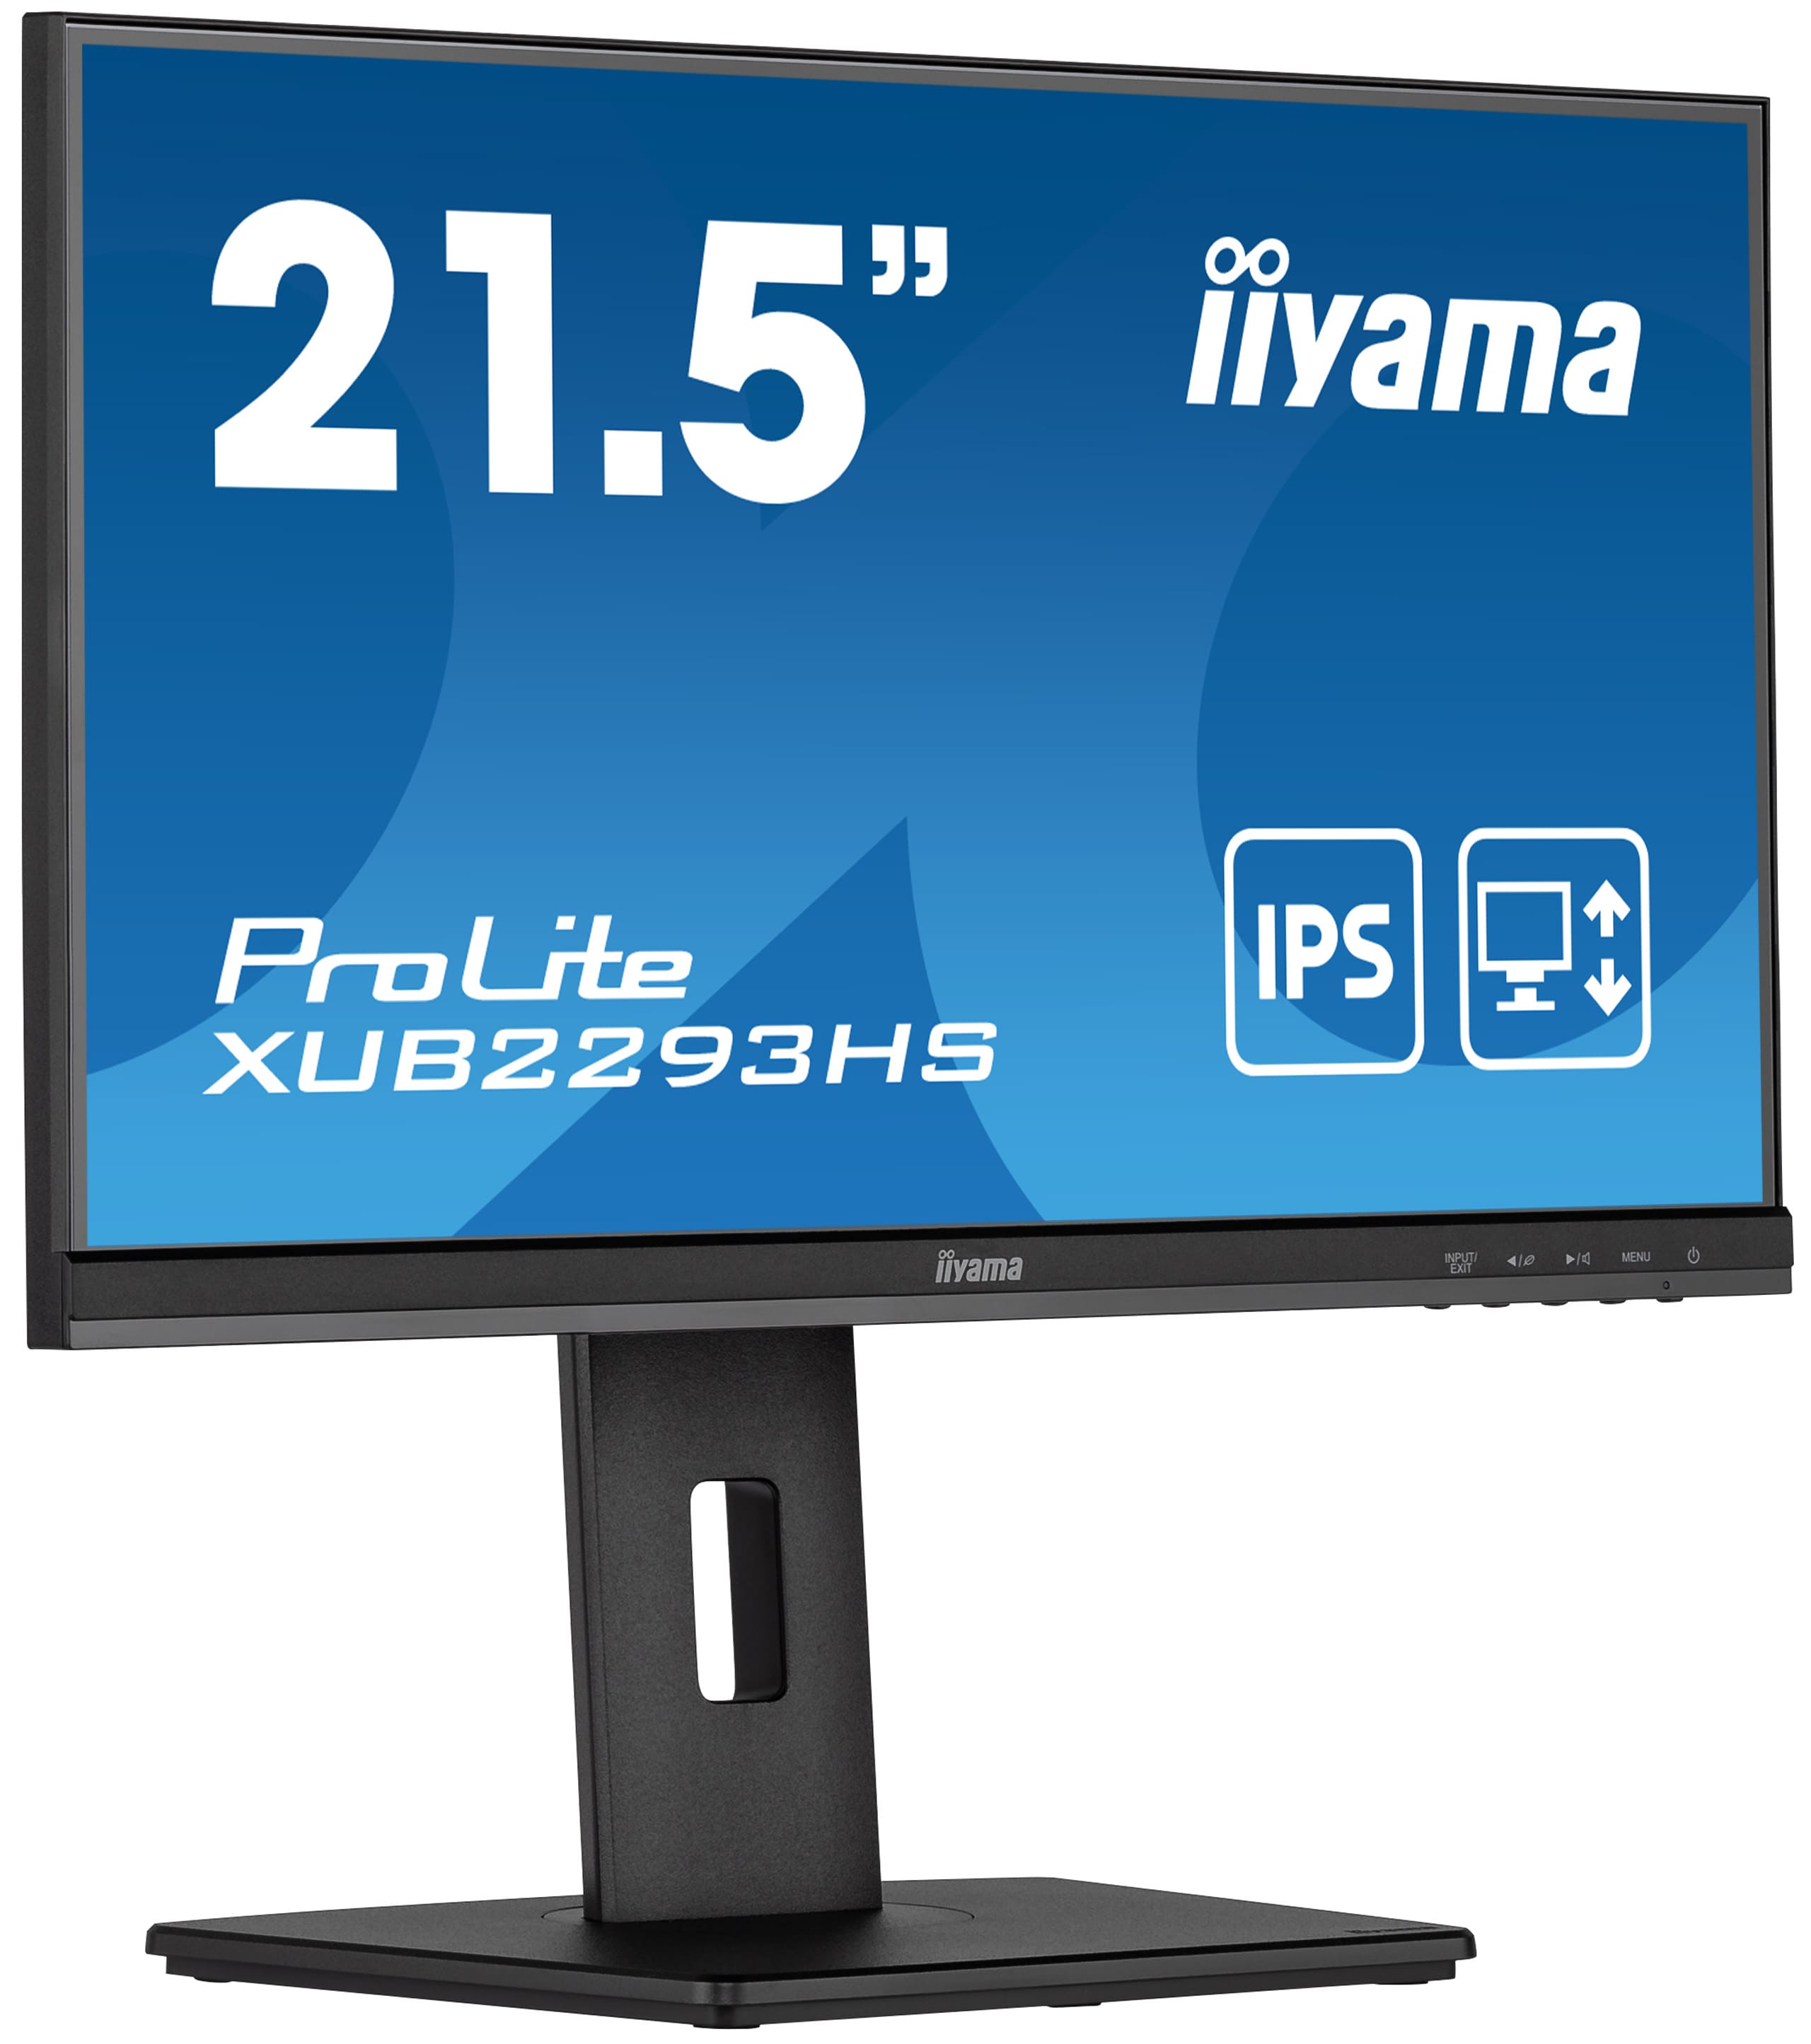 Iiyama ProLite XUB2293HS-B5 | 21.5" (54.5 cm) | Monitor mit einem dreiseitig rahmenlosen Design für Multi-Monitor-Setups